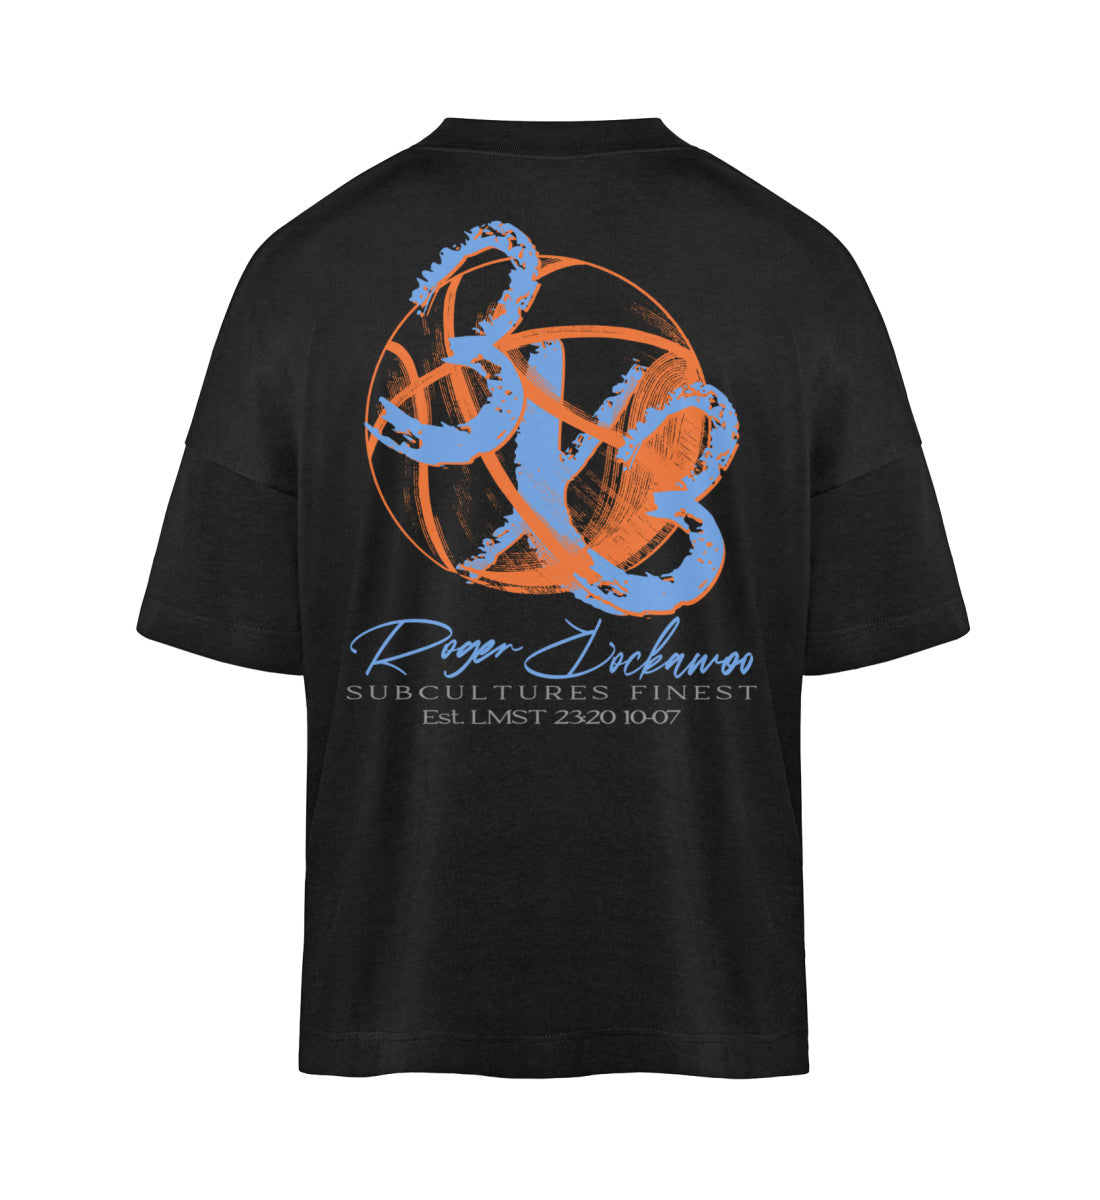 Schwarzes T-Shirt Unisex Oversize Fit für Frauen und Männer bedruckt mit dem Design der Roger Rockawoo Kollektion Basketball 3X3 Check Ball